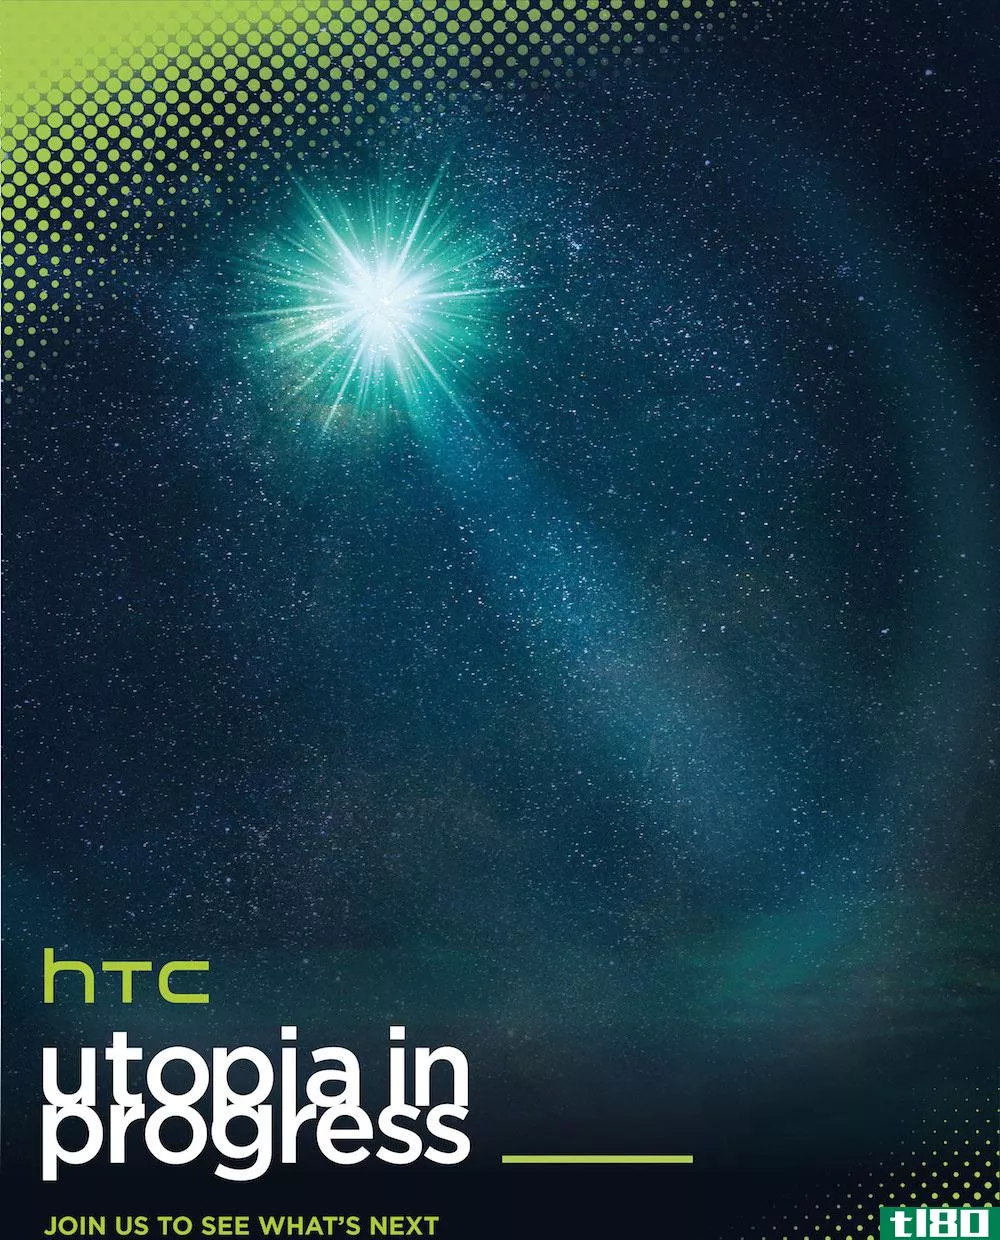 htc的下一款旗舰智能手机将于3月1日推出